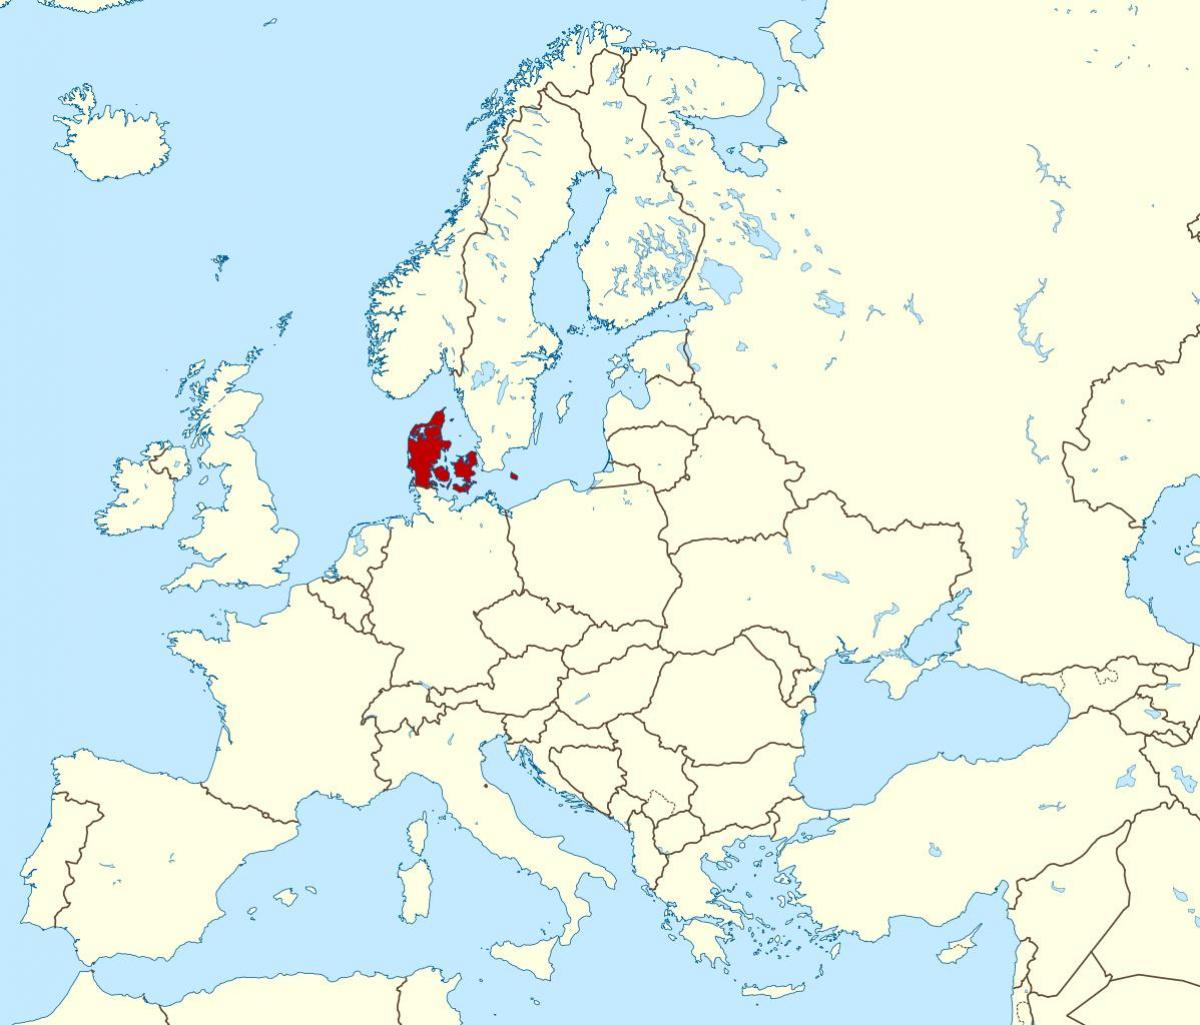 мапата на светот покажува данска